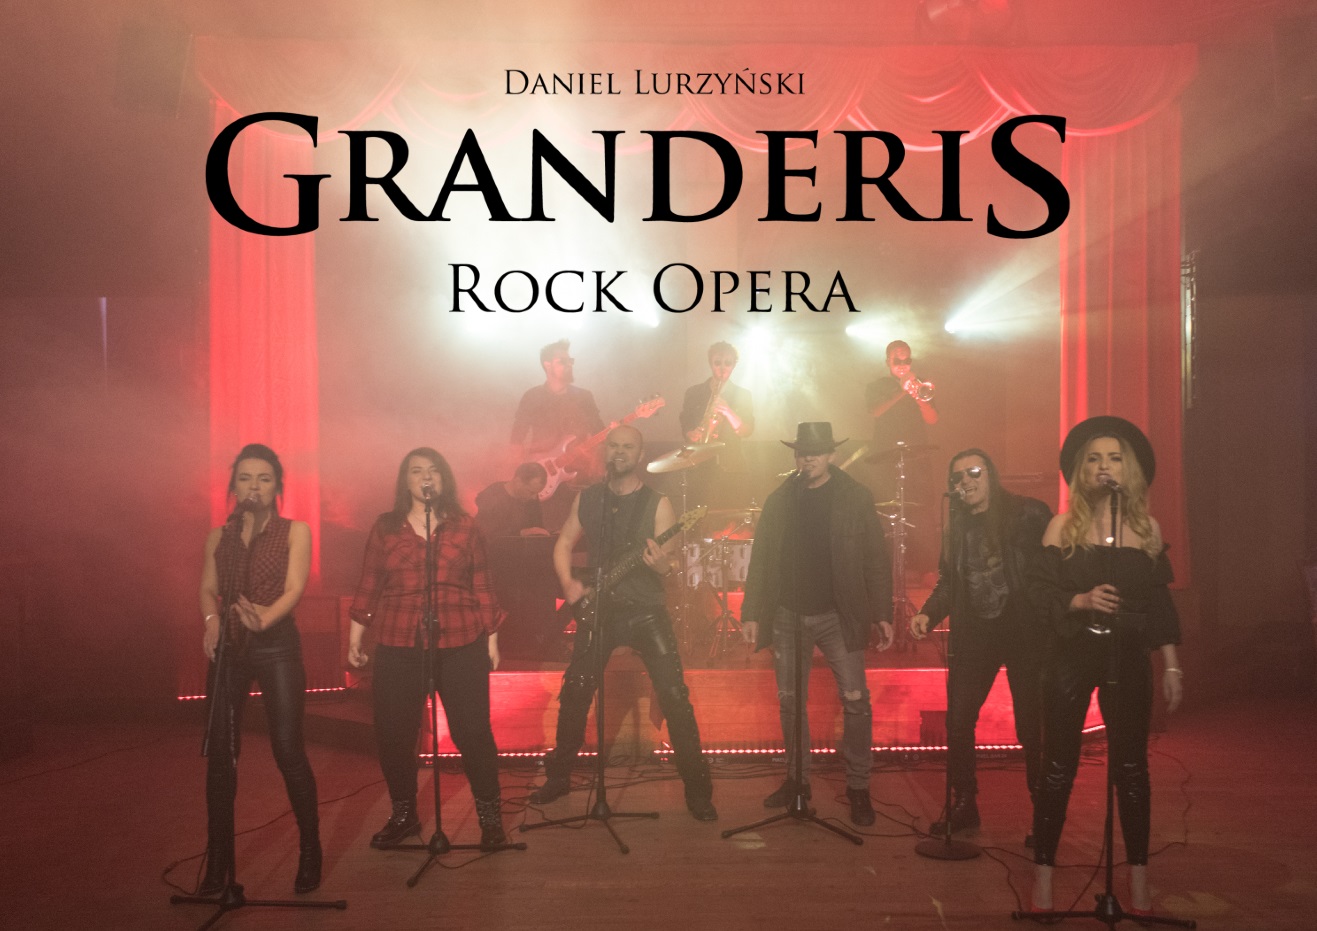 Granderis Rock Opera - projekt muzyczny Daniela Lurzyńskiego